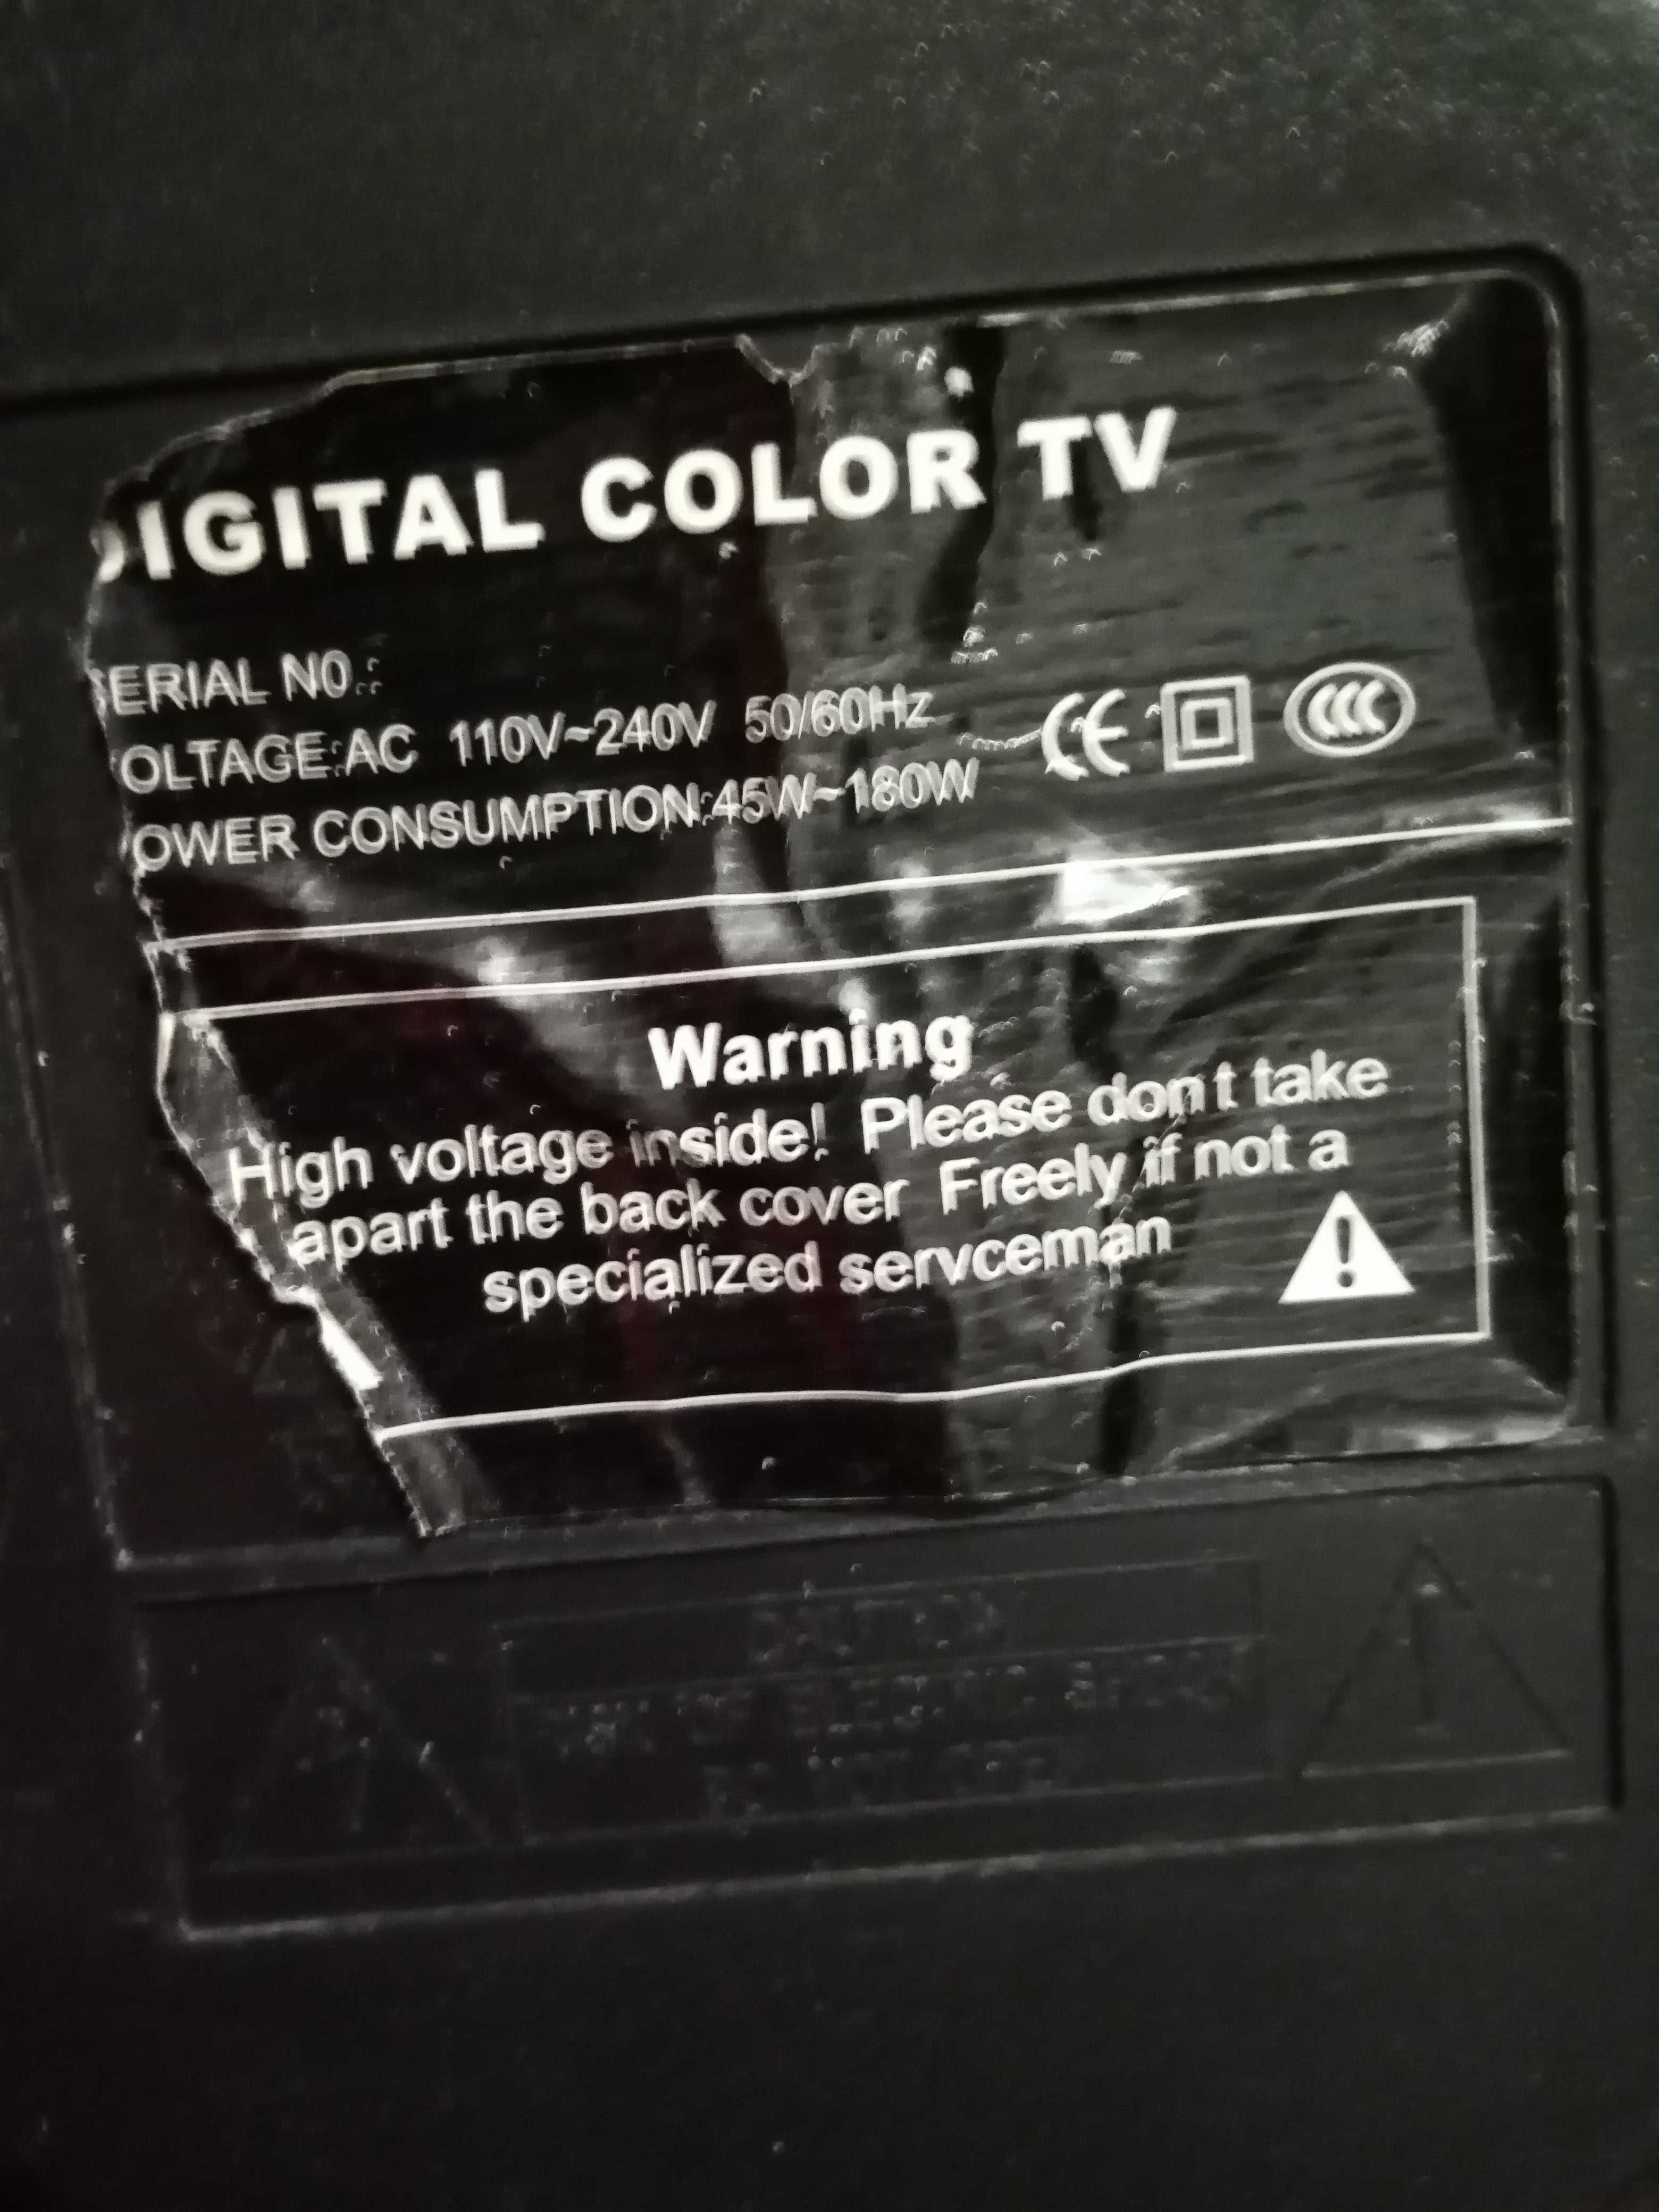 Телевизор (два цветных, черный компактный)